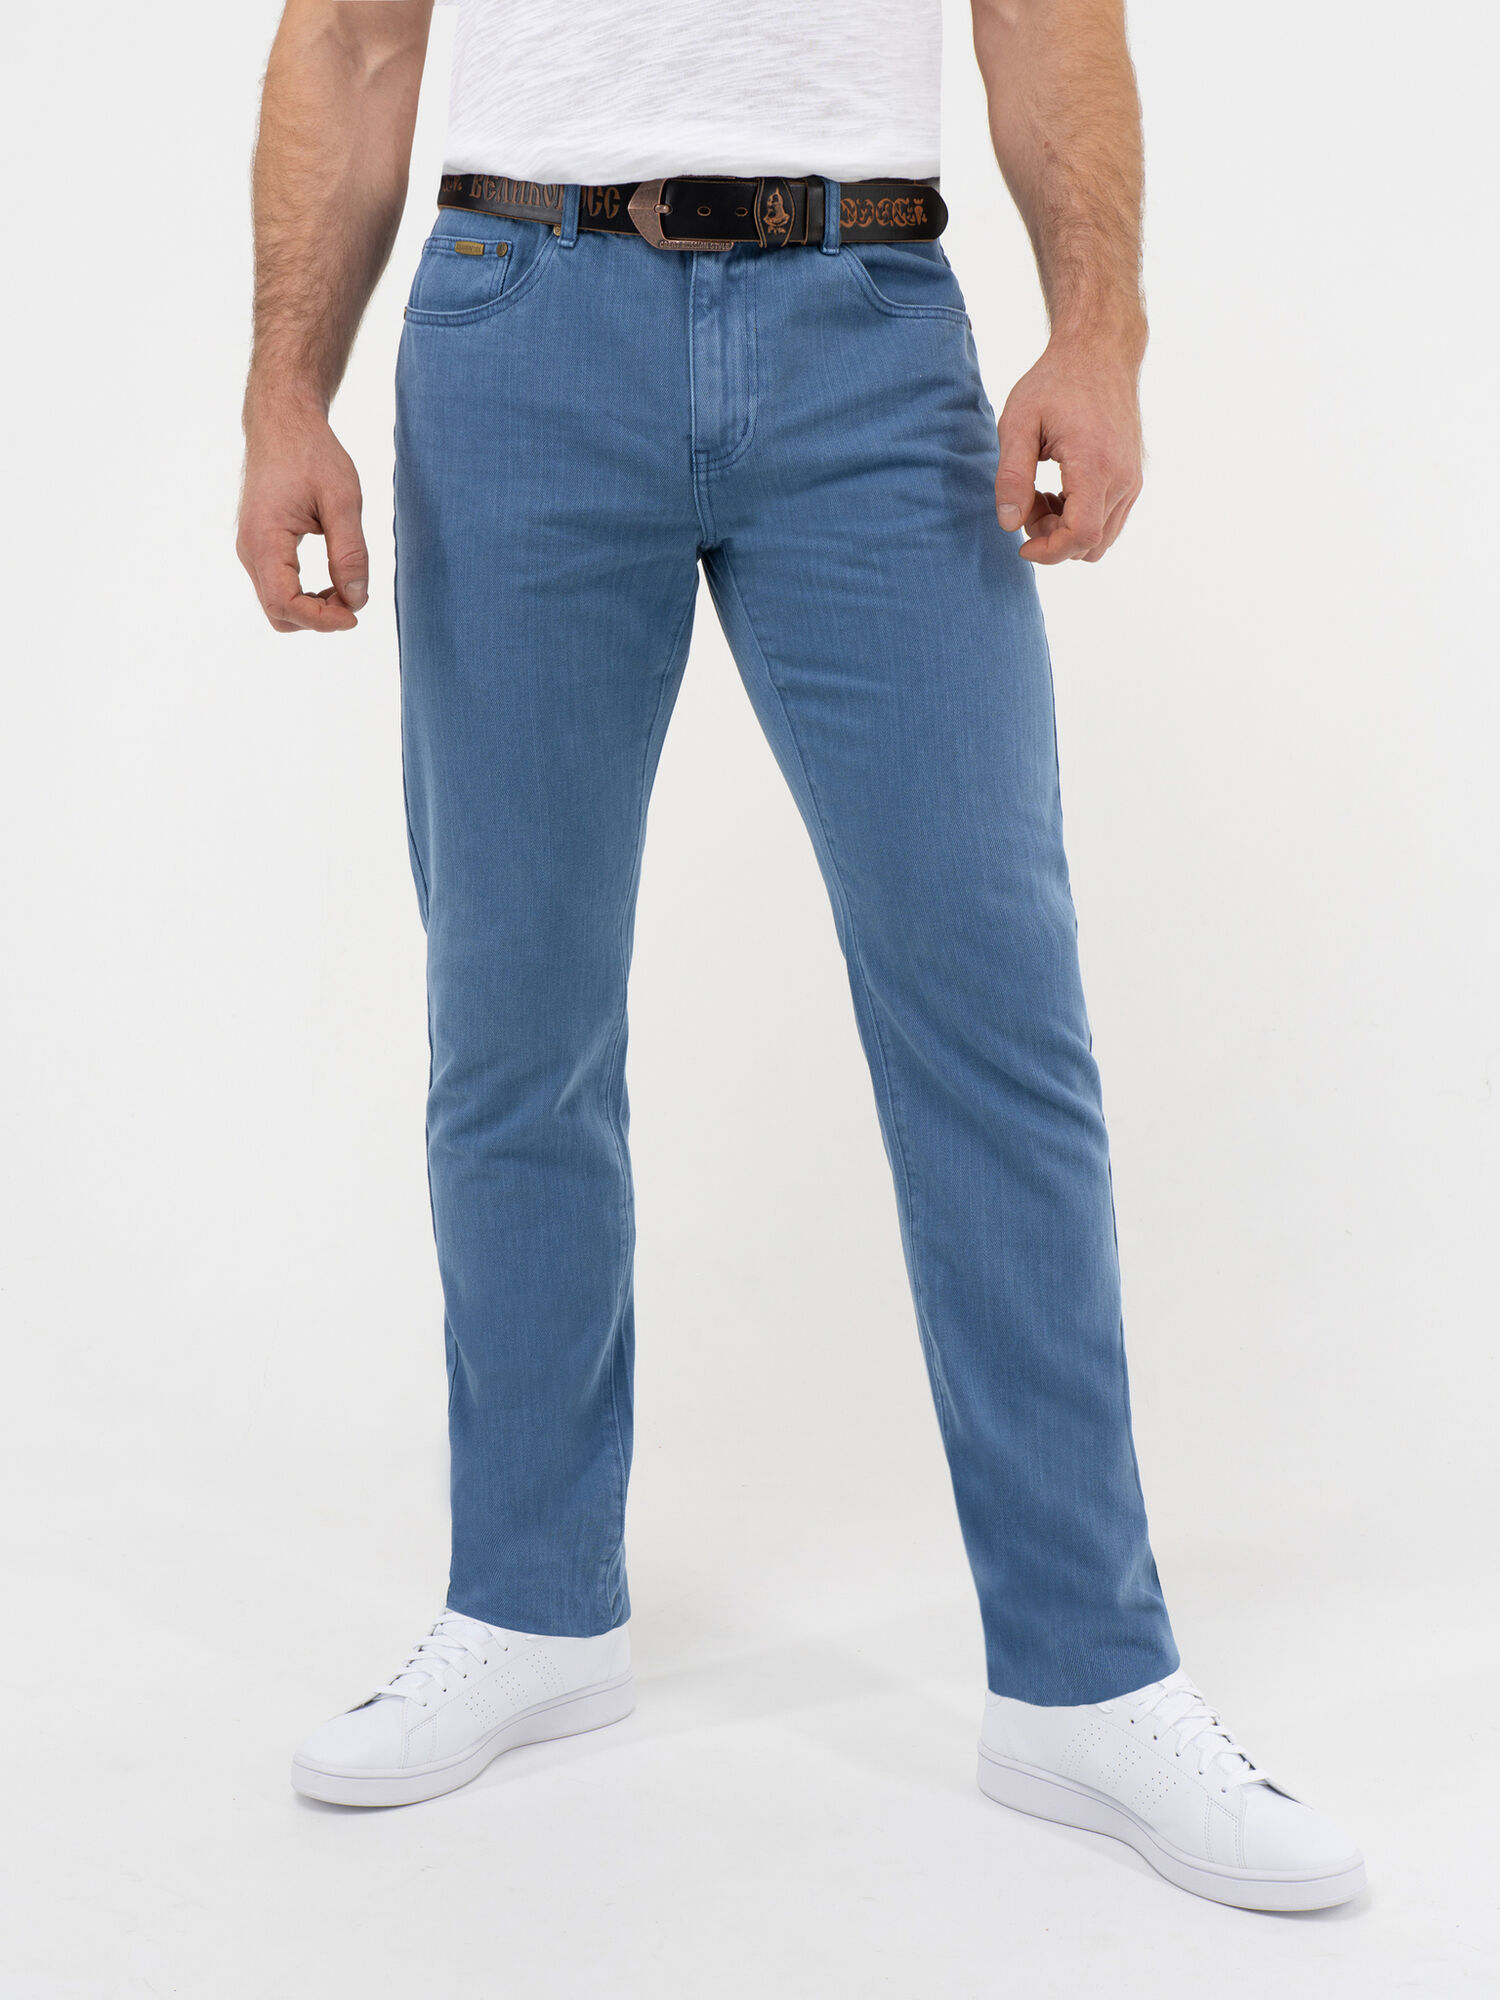 Плотные джинсы цвета синего денима из 100%-ного премиального хлопка